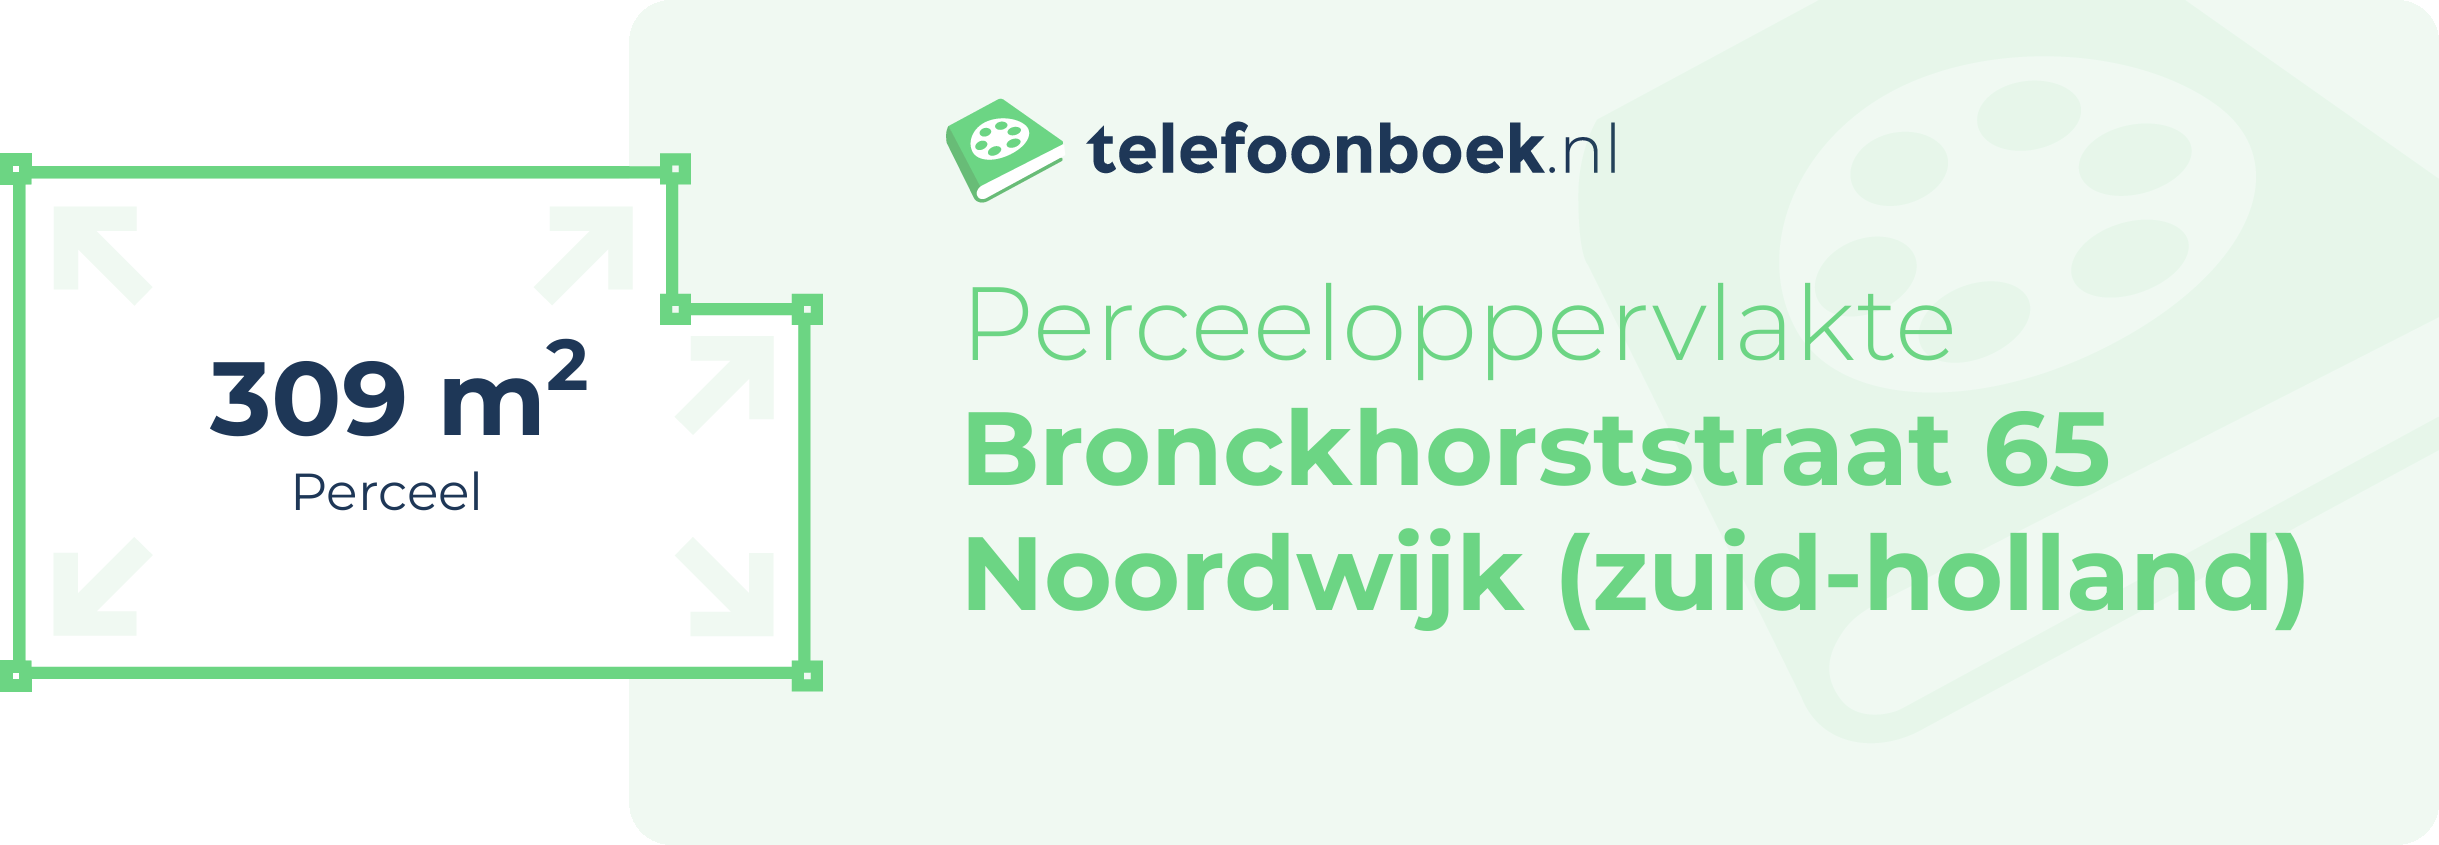 Perceeloppervlakte Bronckhorststraat 65 Noordwijk (Zuid-Holland)